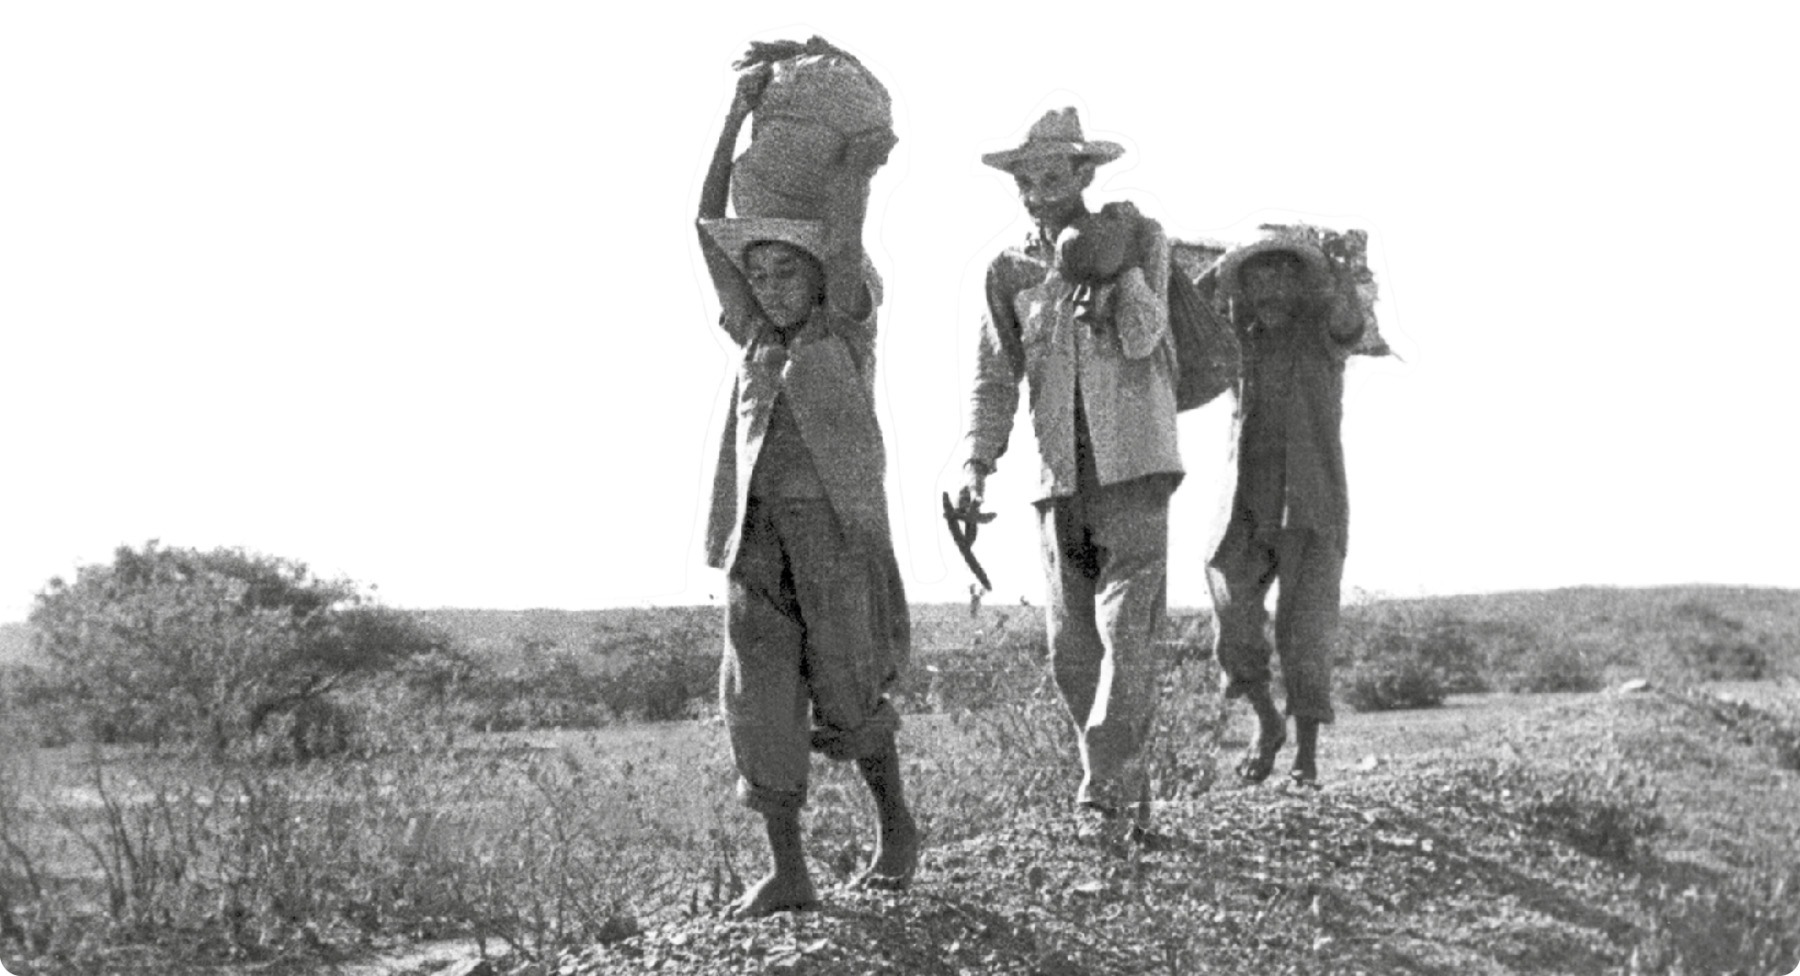 Fotografia em preto e branco. Três pessoas caminhando em linha. Eles carregam fardos sobre as cabeças e ombros. Ao redor há arbustos secos.